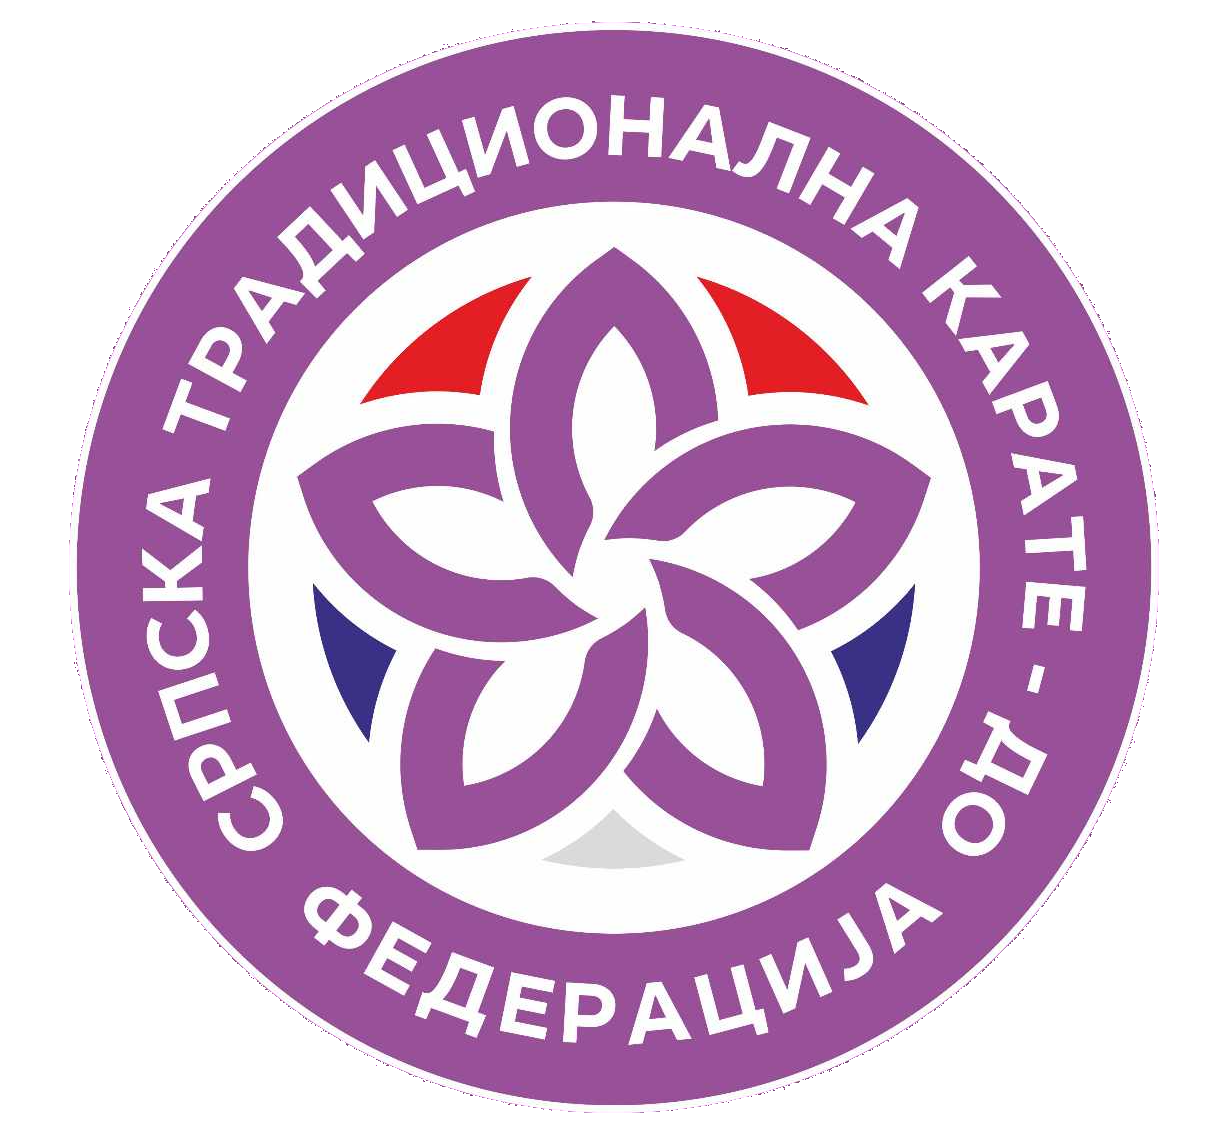 STKF Logo